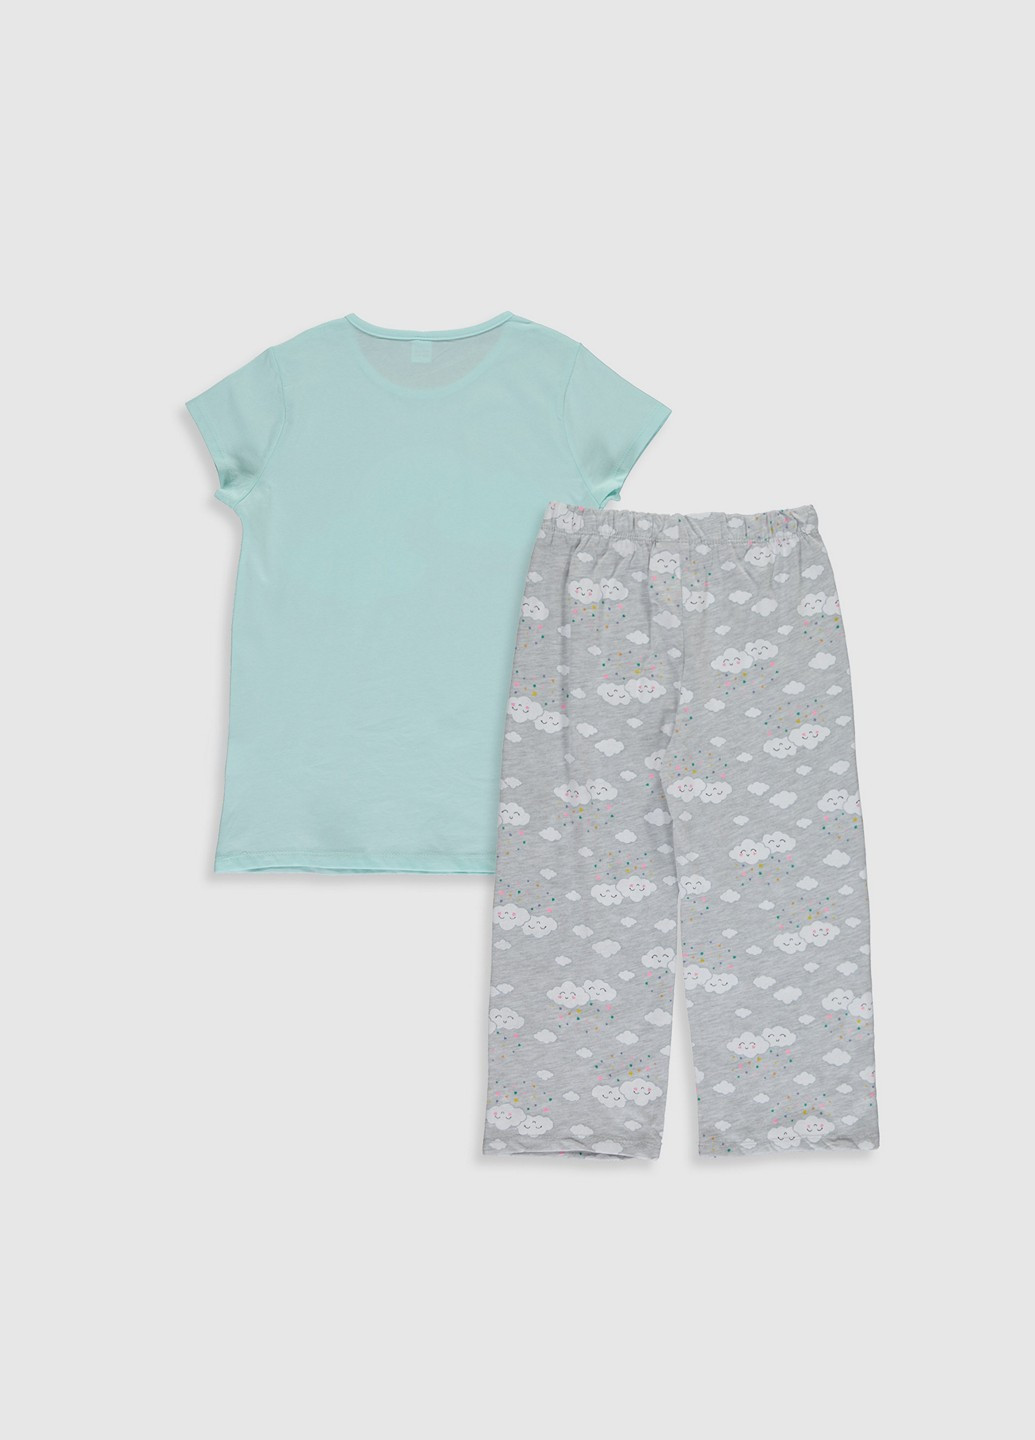 Комбинированная всесезон пижама (футболка, брюки) футболка + брюки LC Waikiki